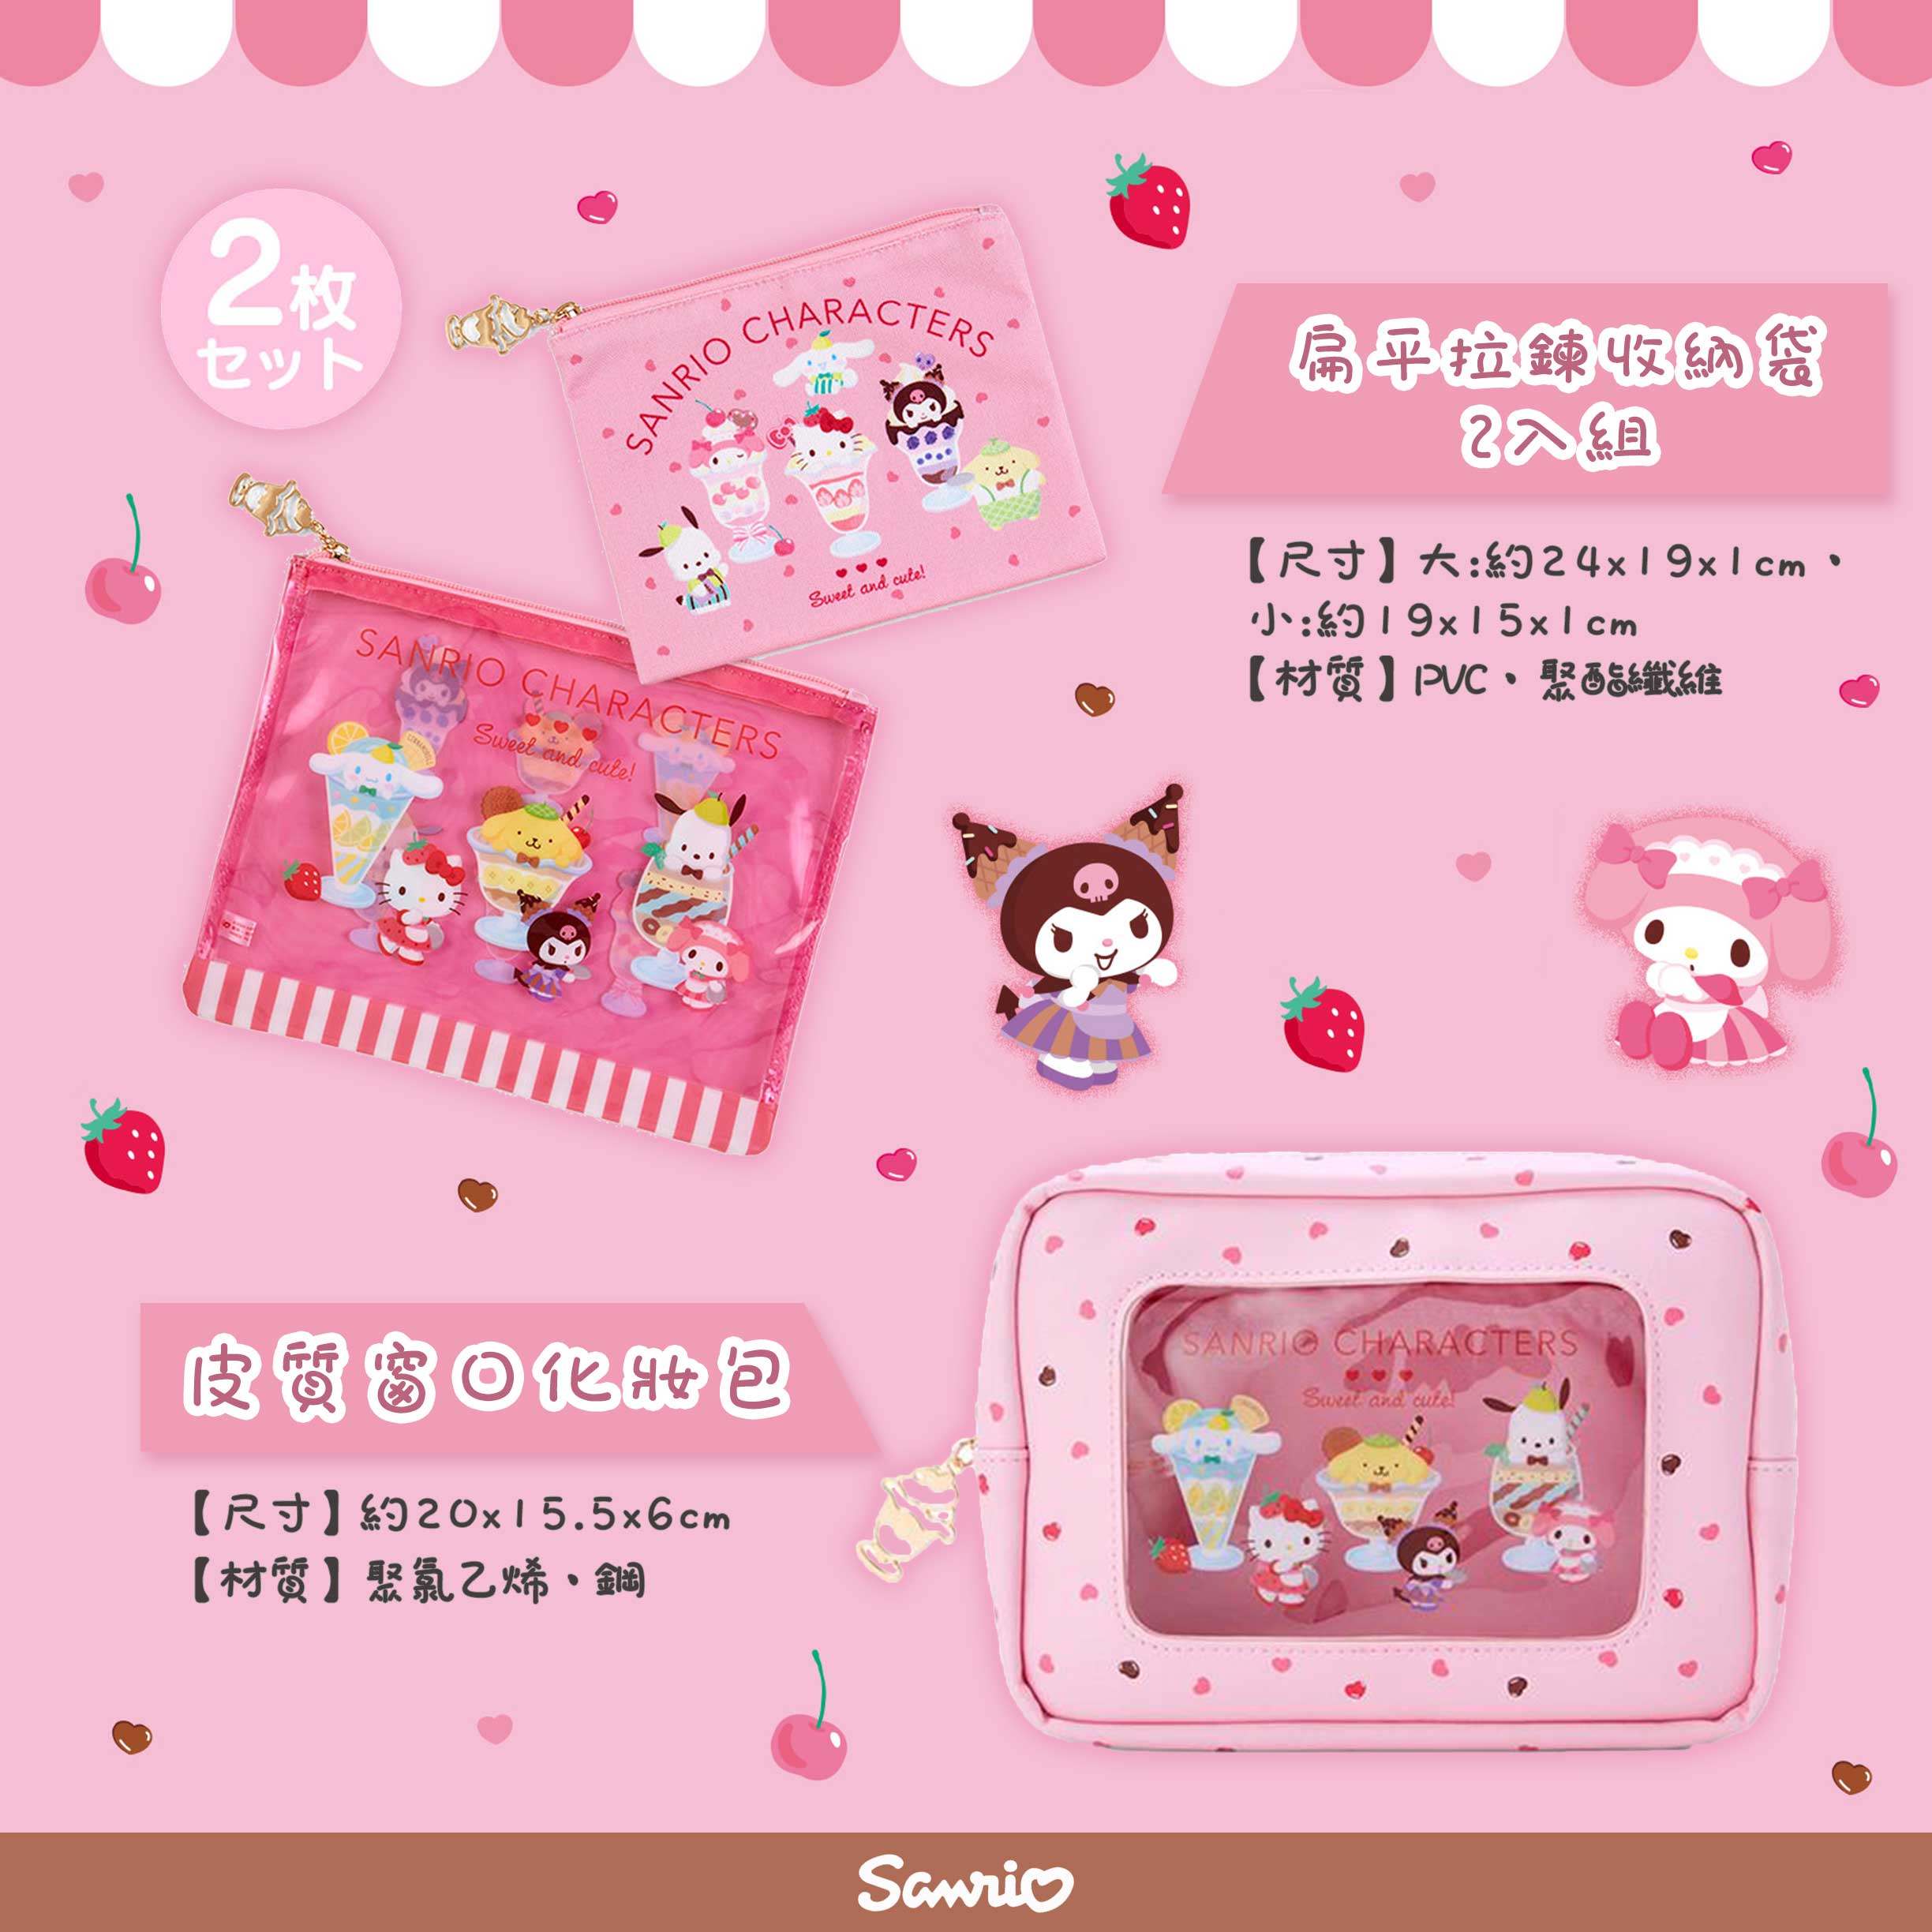 皮質窗口化妝包&扁平拉鍊收納袋2入組-三麗鷗 Sanrio 日本進口正版授權